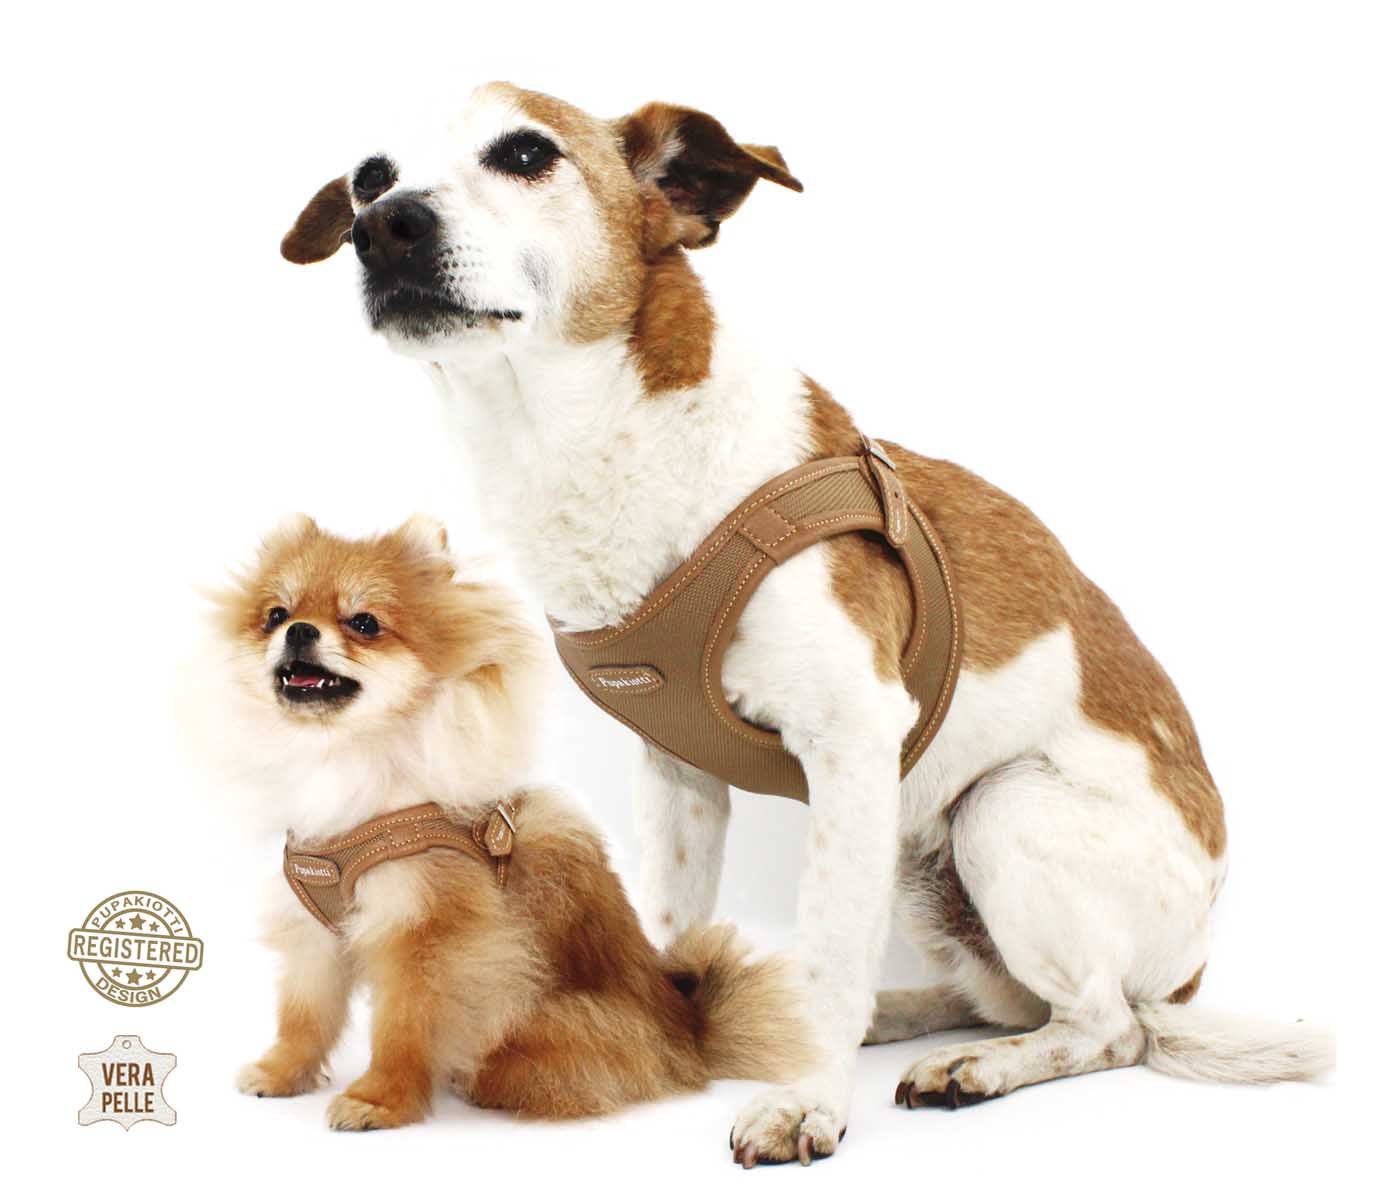 Contemporary. Pettorina ergonomica e regolabile in tessuto tecnico e vera pelle per cane